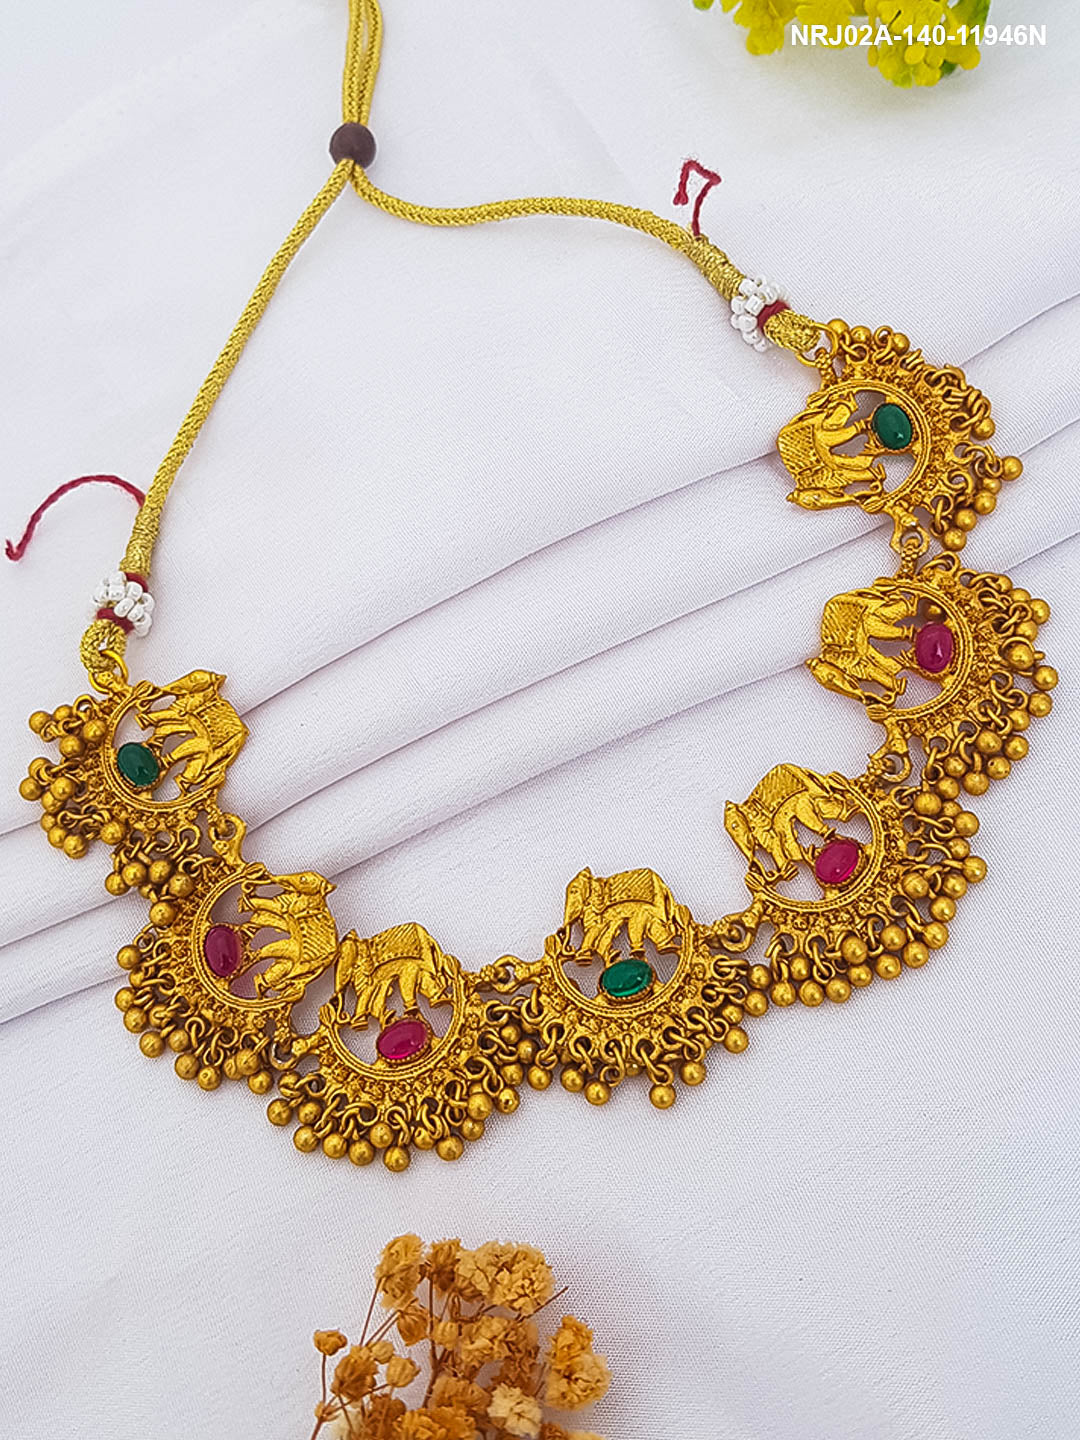 Gold Plated Designer Short Necklace 11946N